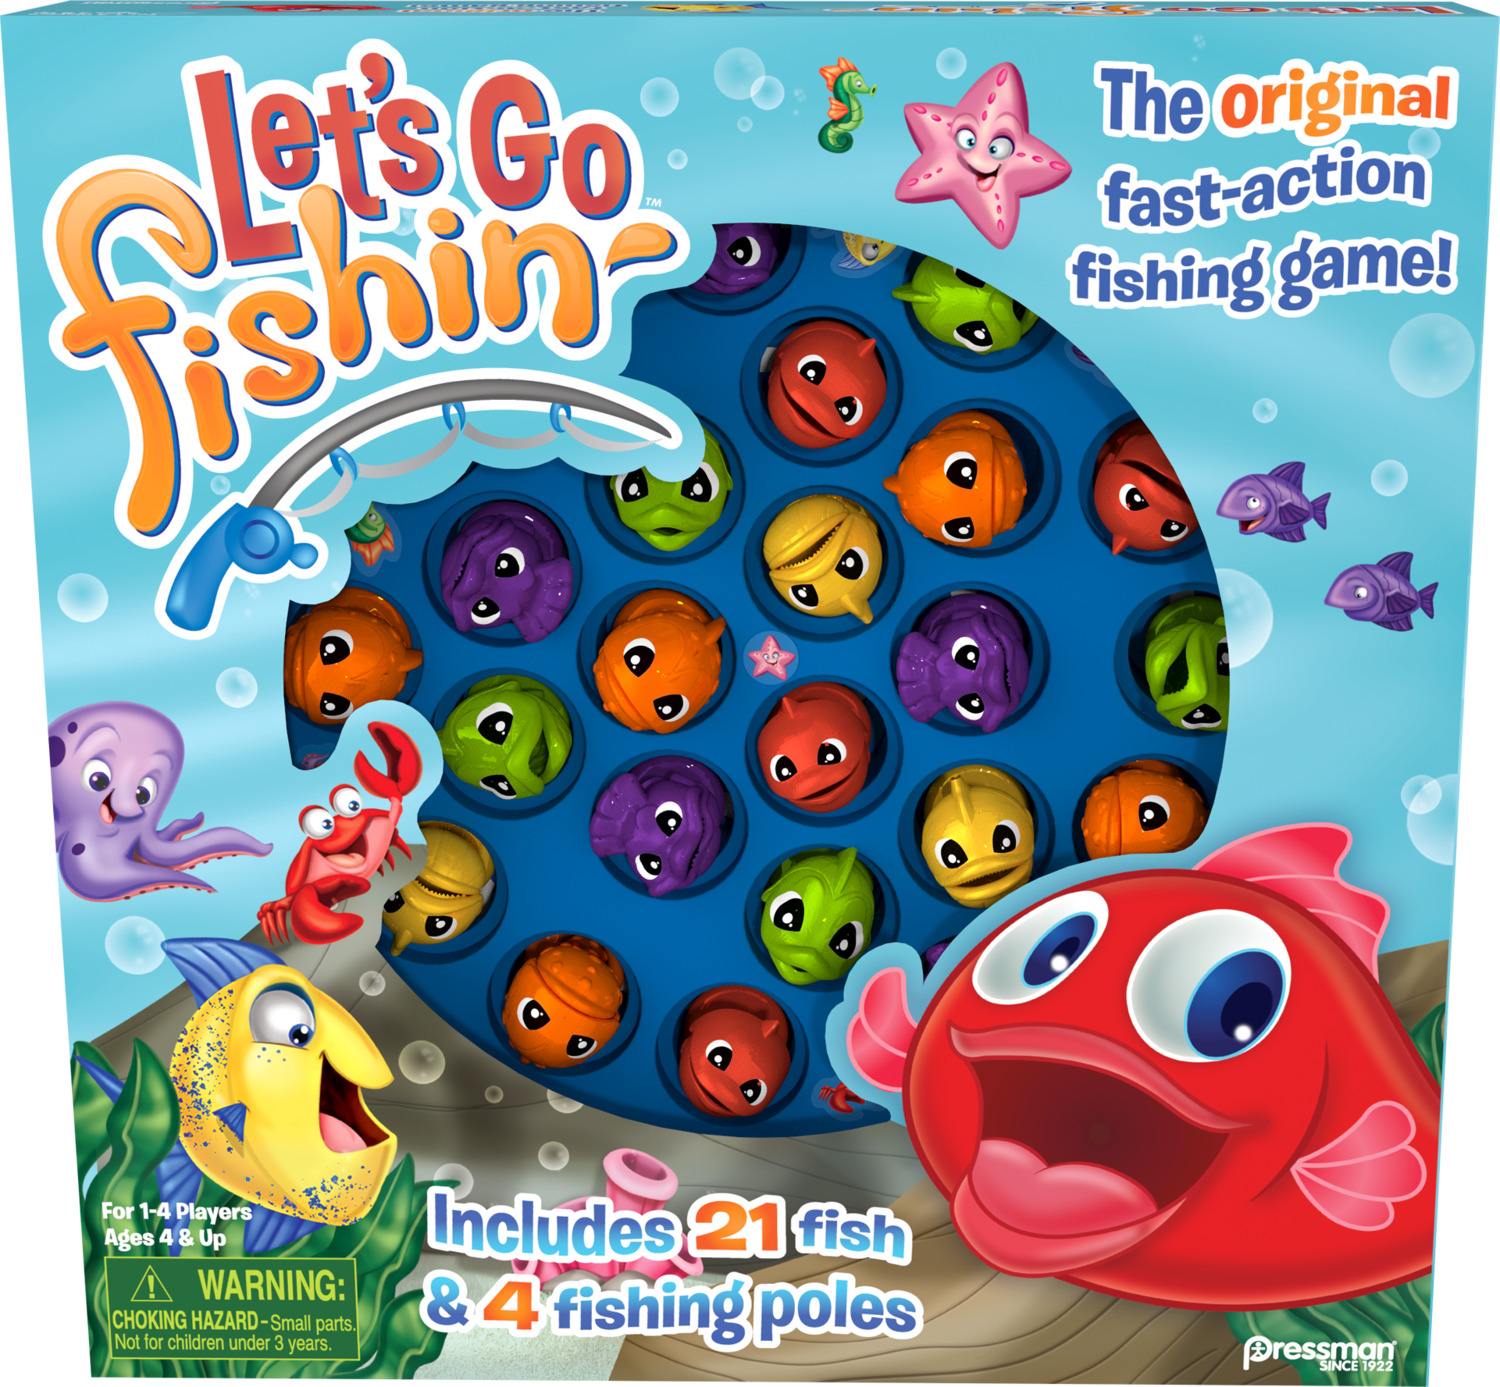 Pressman Toy Hello Kitty Let's Go Fishin' Game Ages 4+, 1 ea